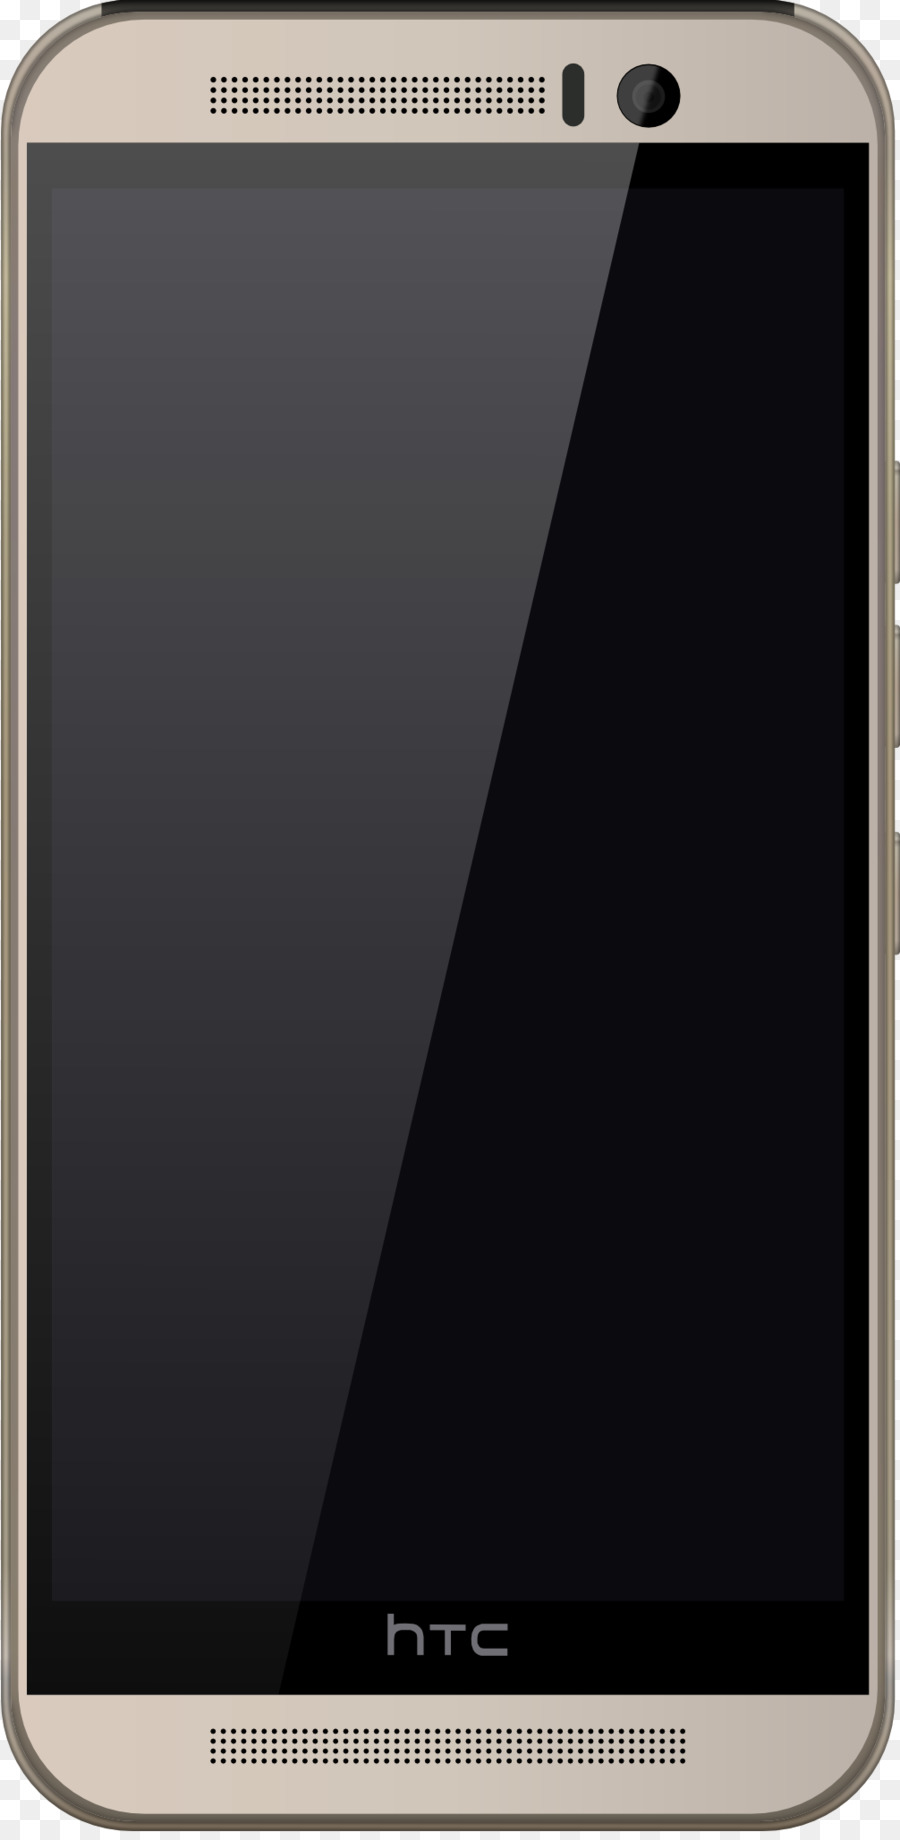 Smartphone HTC One M9 HTC One (M8) Feature-phone HTC 10 - Smartphone